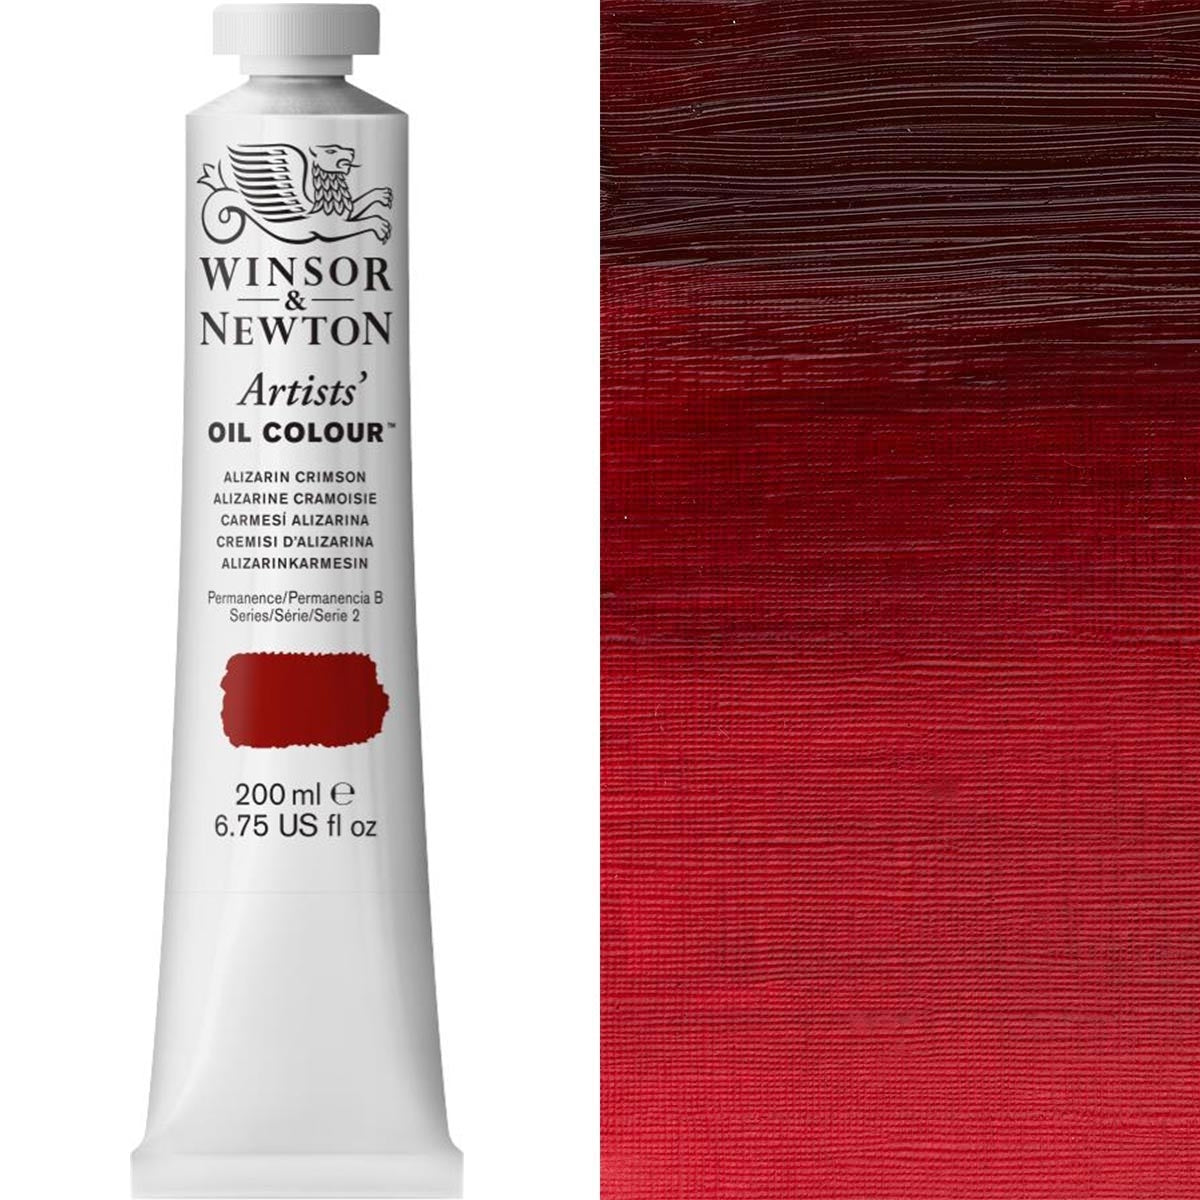 Winsor et Newton - Couleur d'huile des artistes - 200 ml - Alizarin Crimson